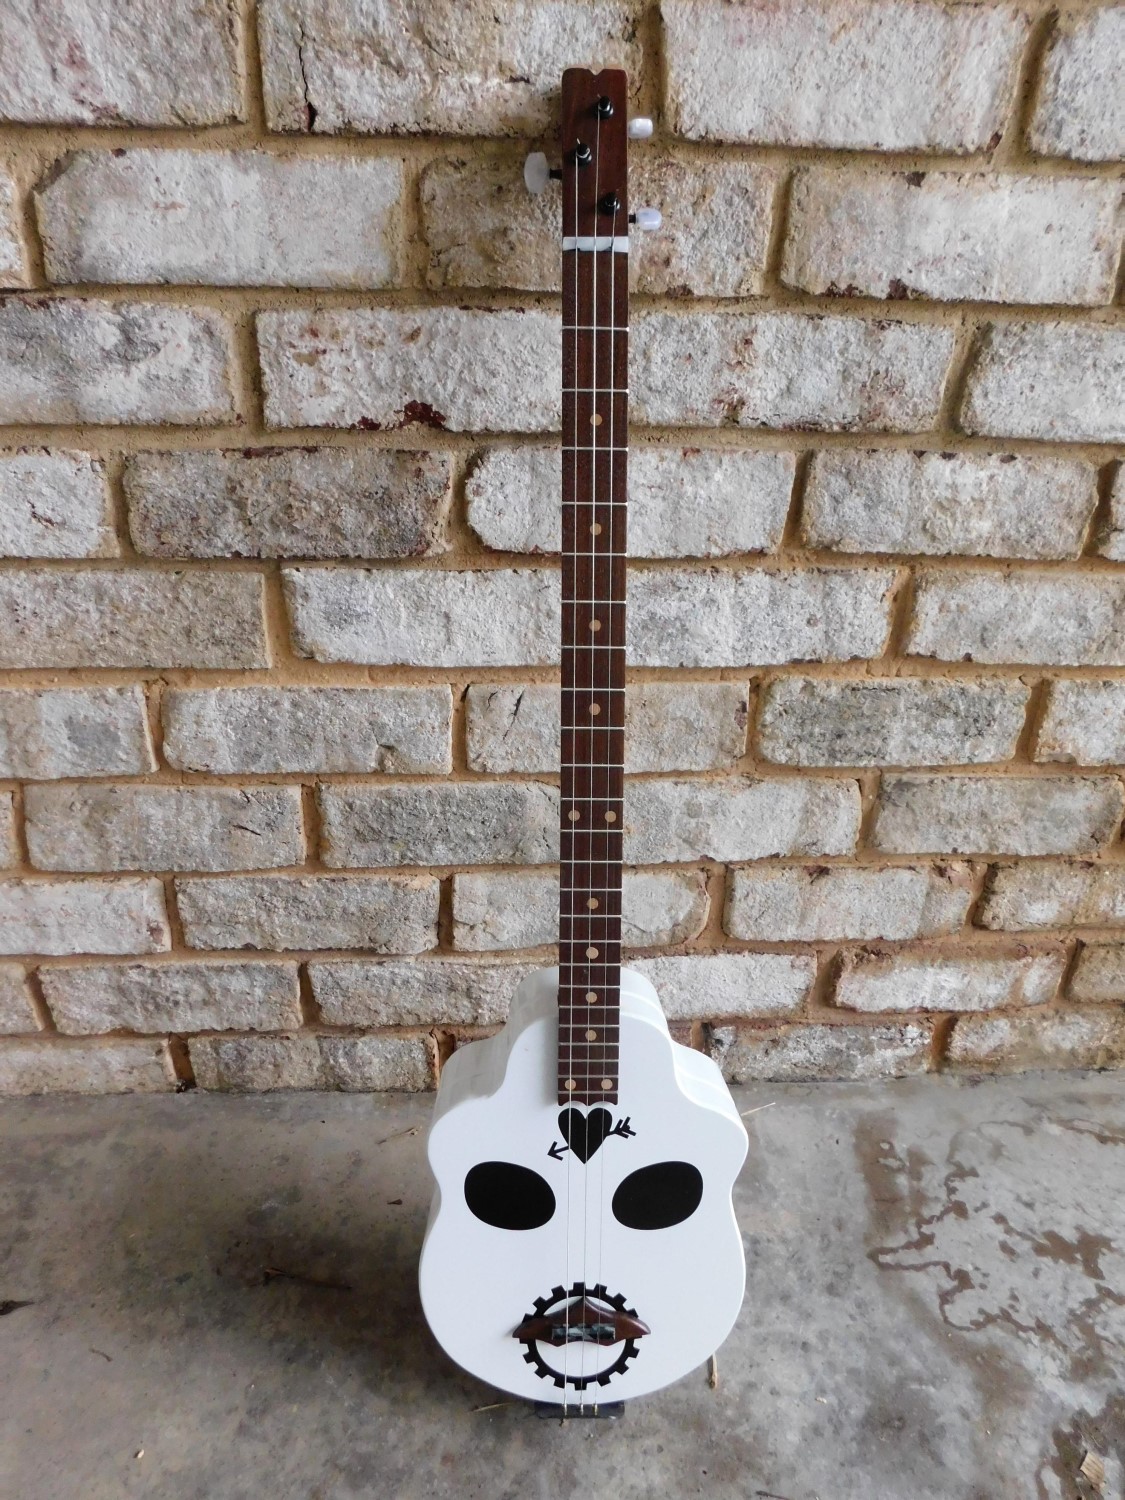 Steve W.'s 3-string skull guitar